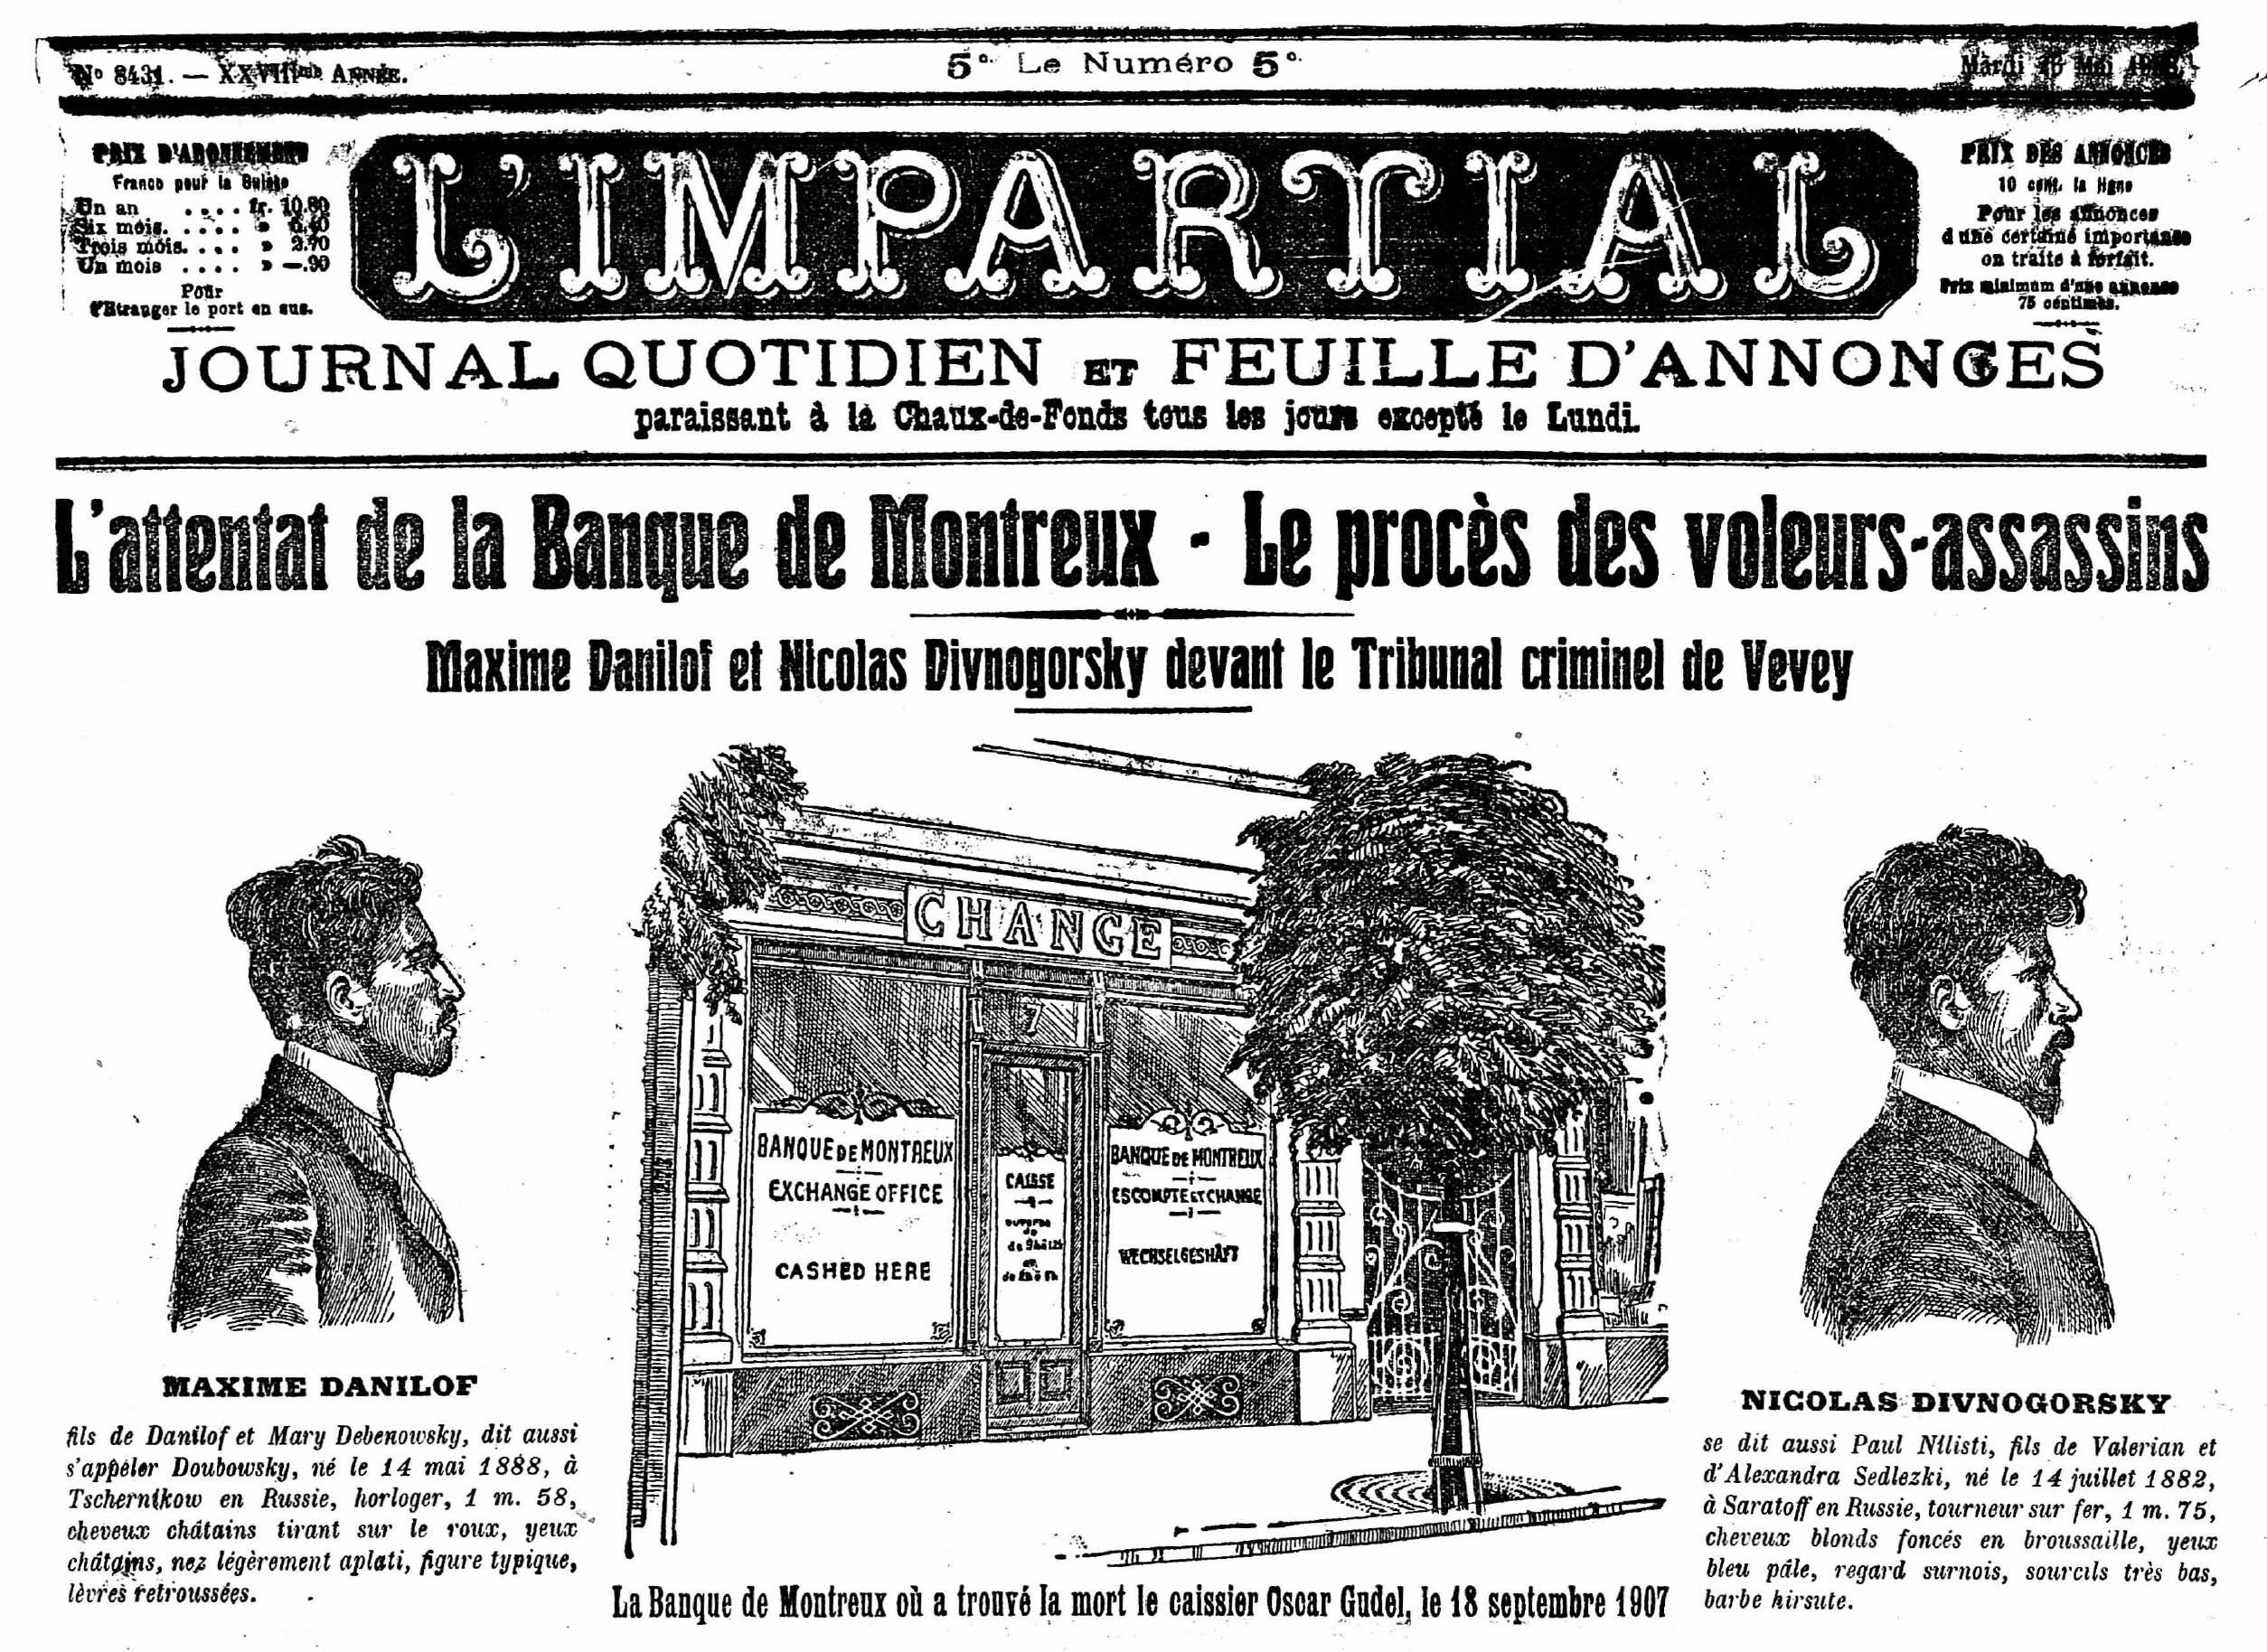 Frontseite der Zeitung Impartial von 1907 mit Zeichnungen der beiden inhaftierten Täter